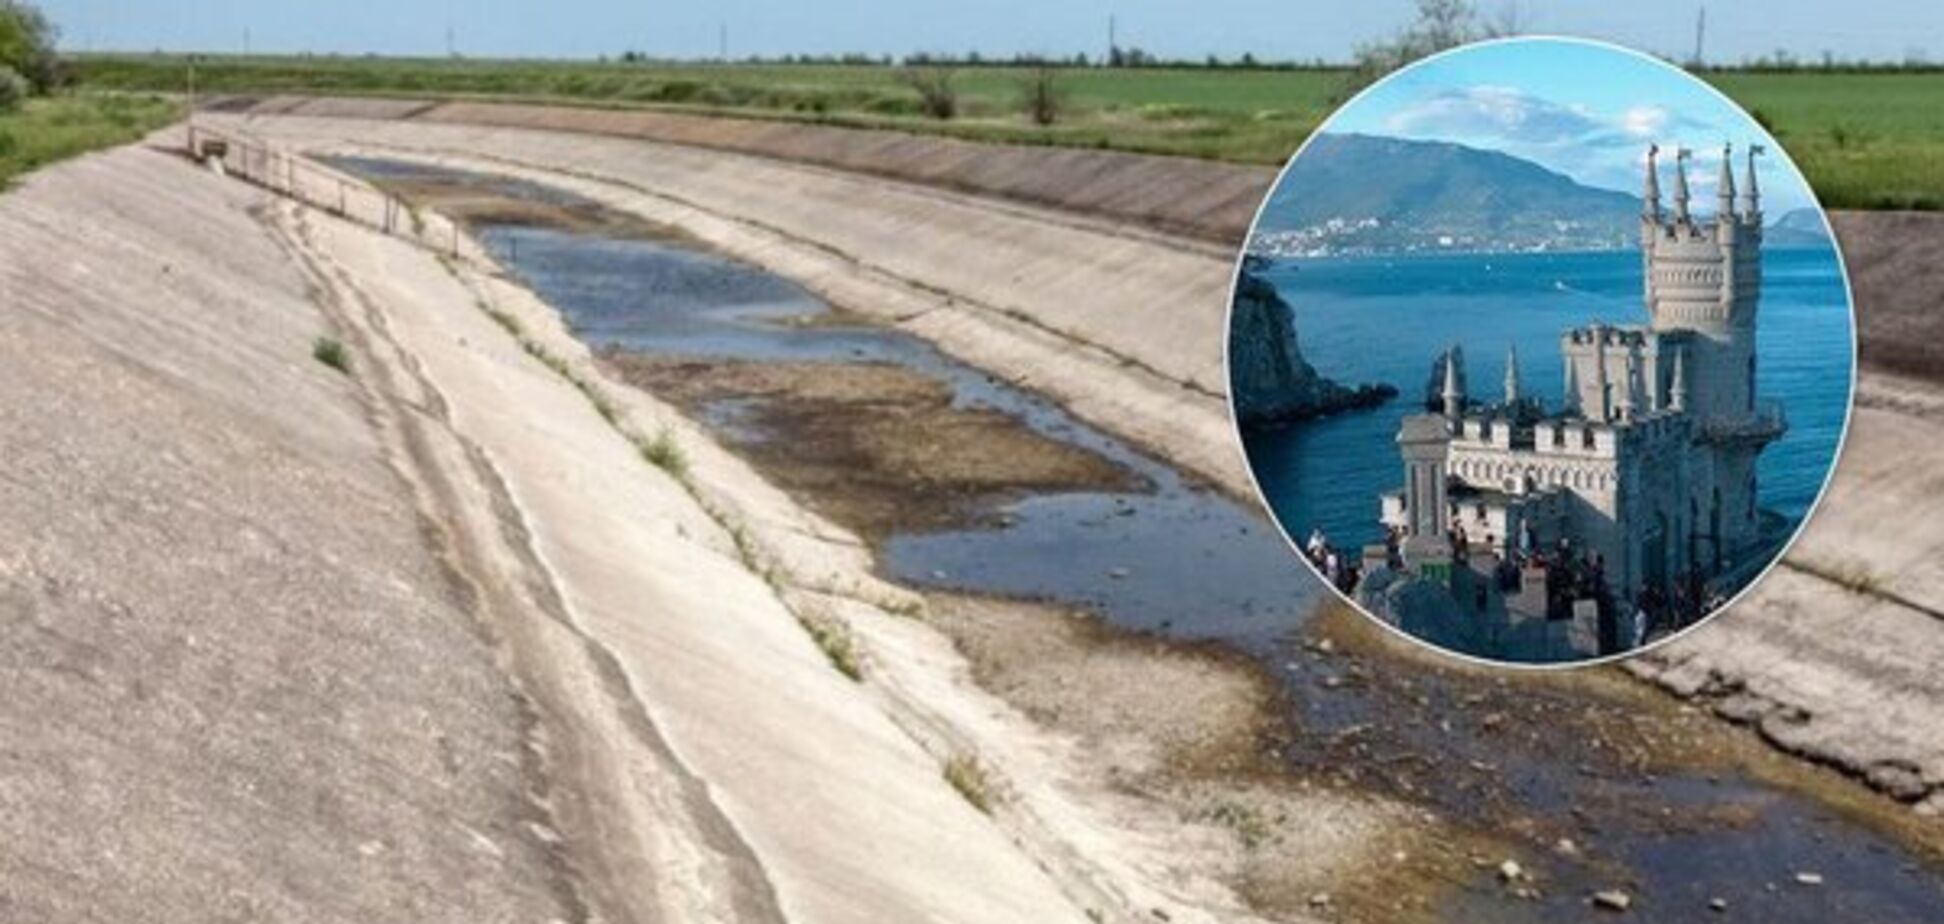 Води в Криму майже не залишилося: півострів опинився на межі нової екологічної катастрофи